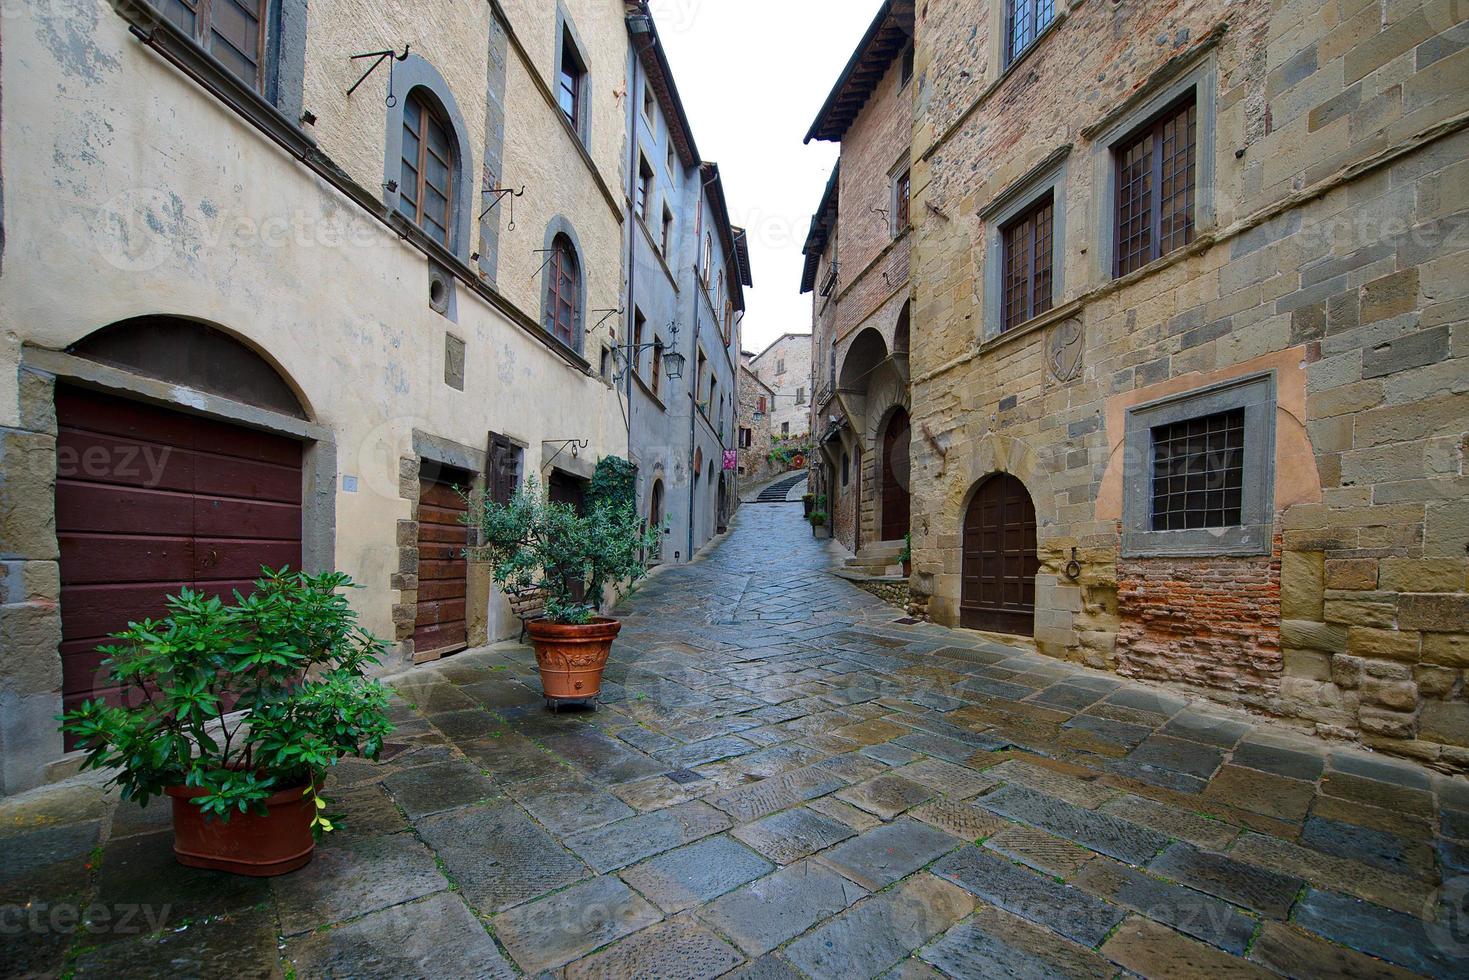 detalhe de anghiari, uma vila medieval na toscana - itália foto